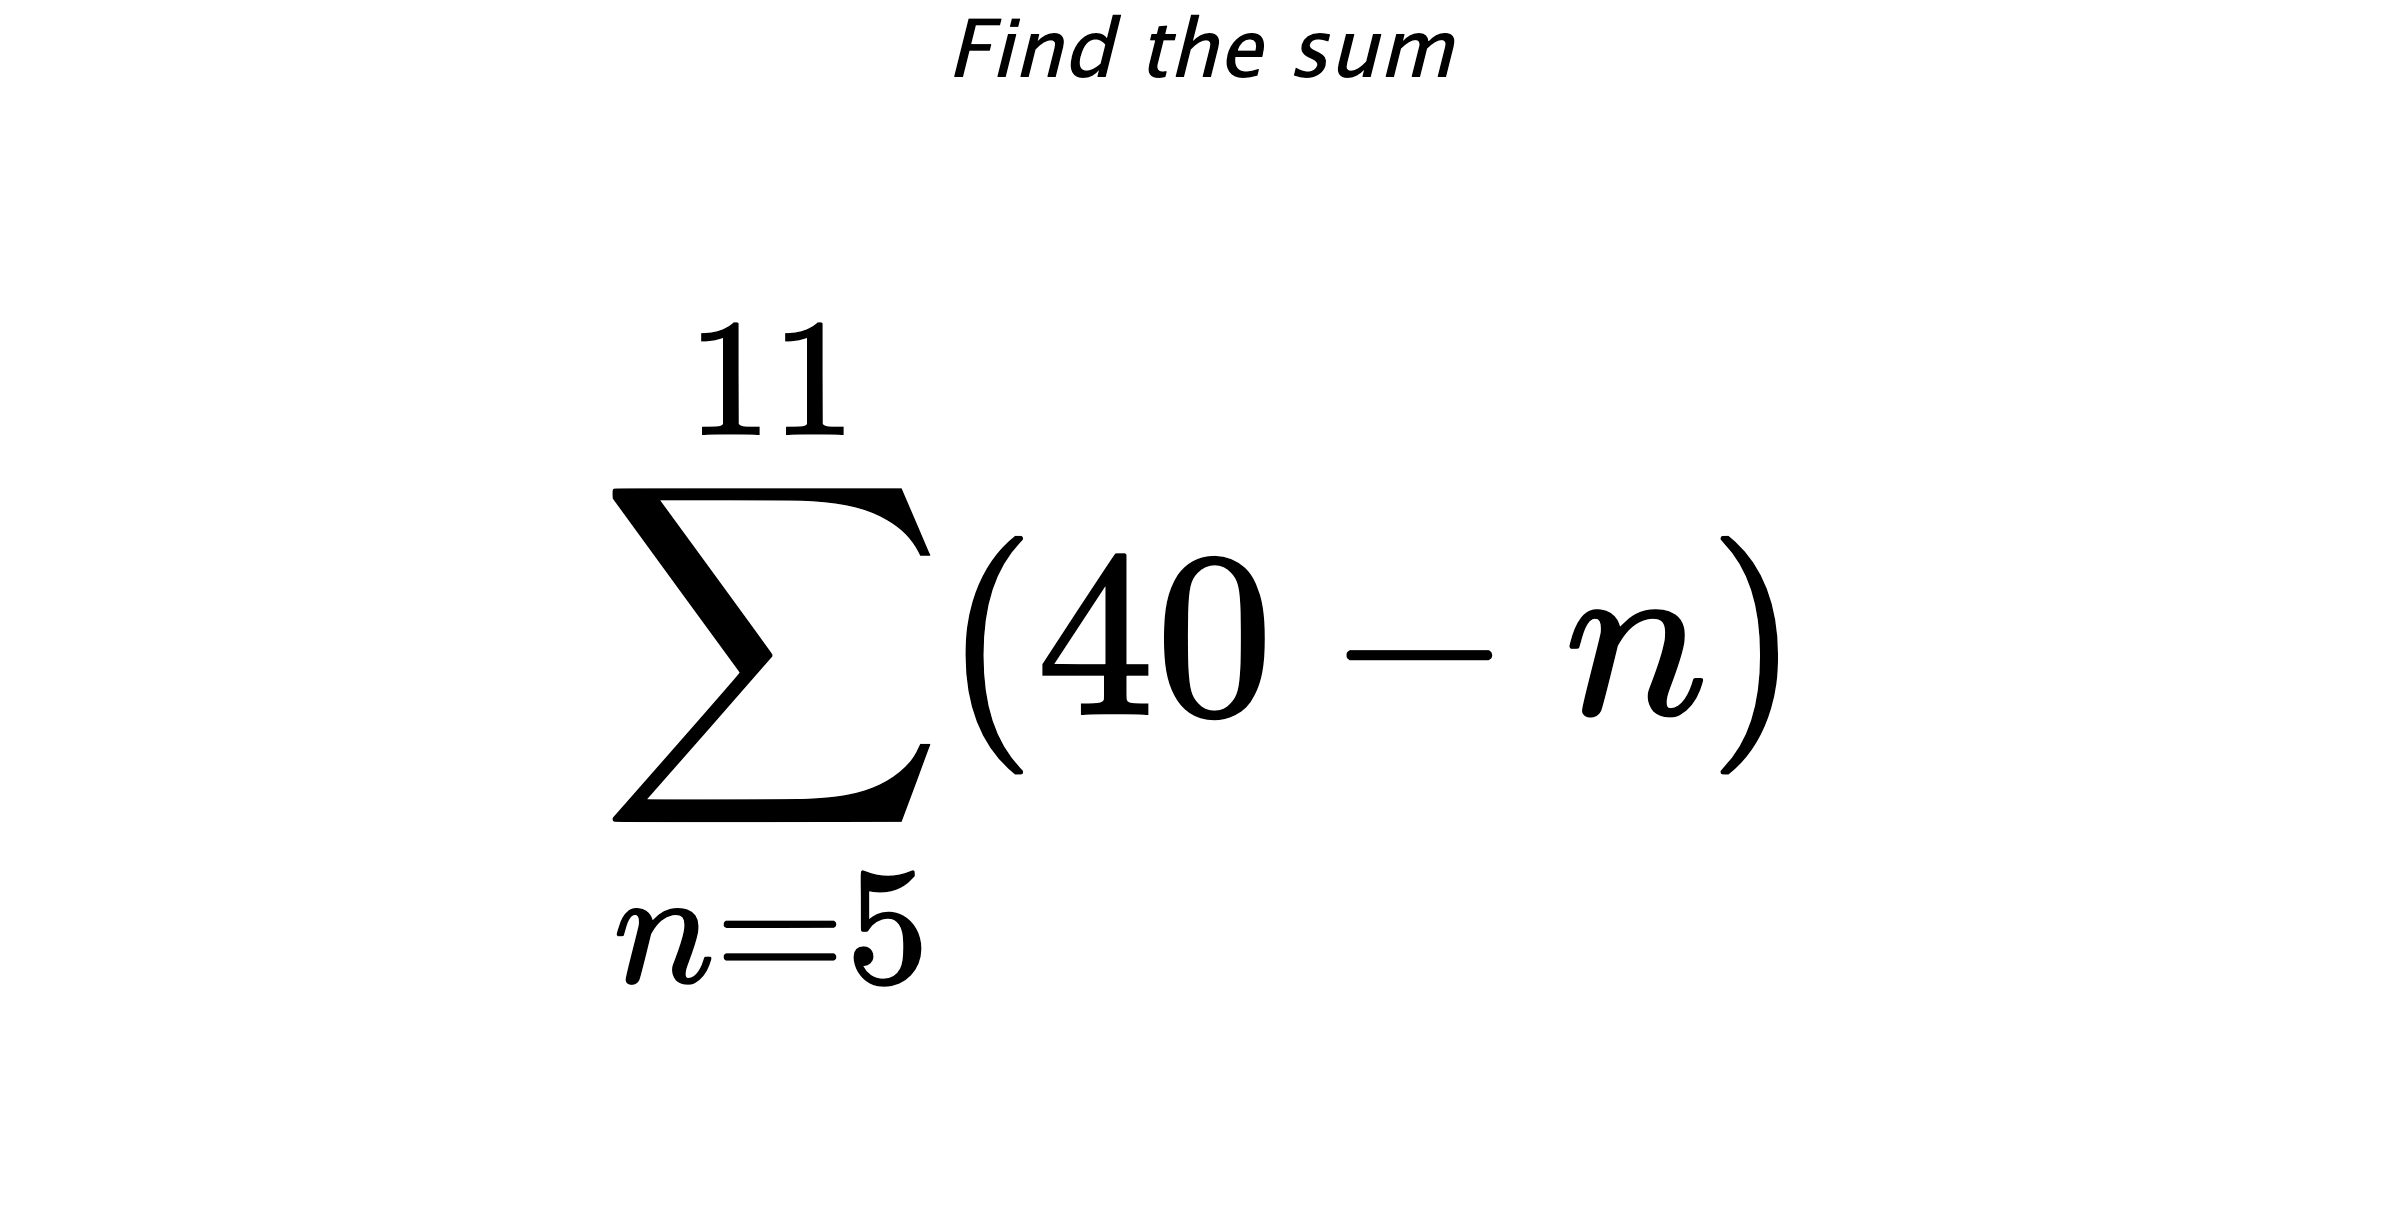 Find the sum $$ \sum_{n=5}^{11} (40-n)$$